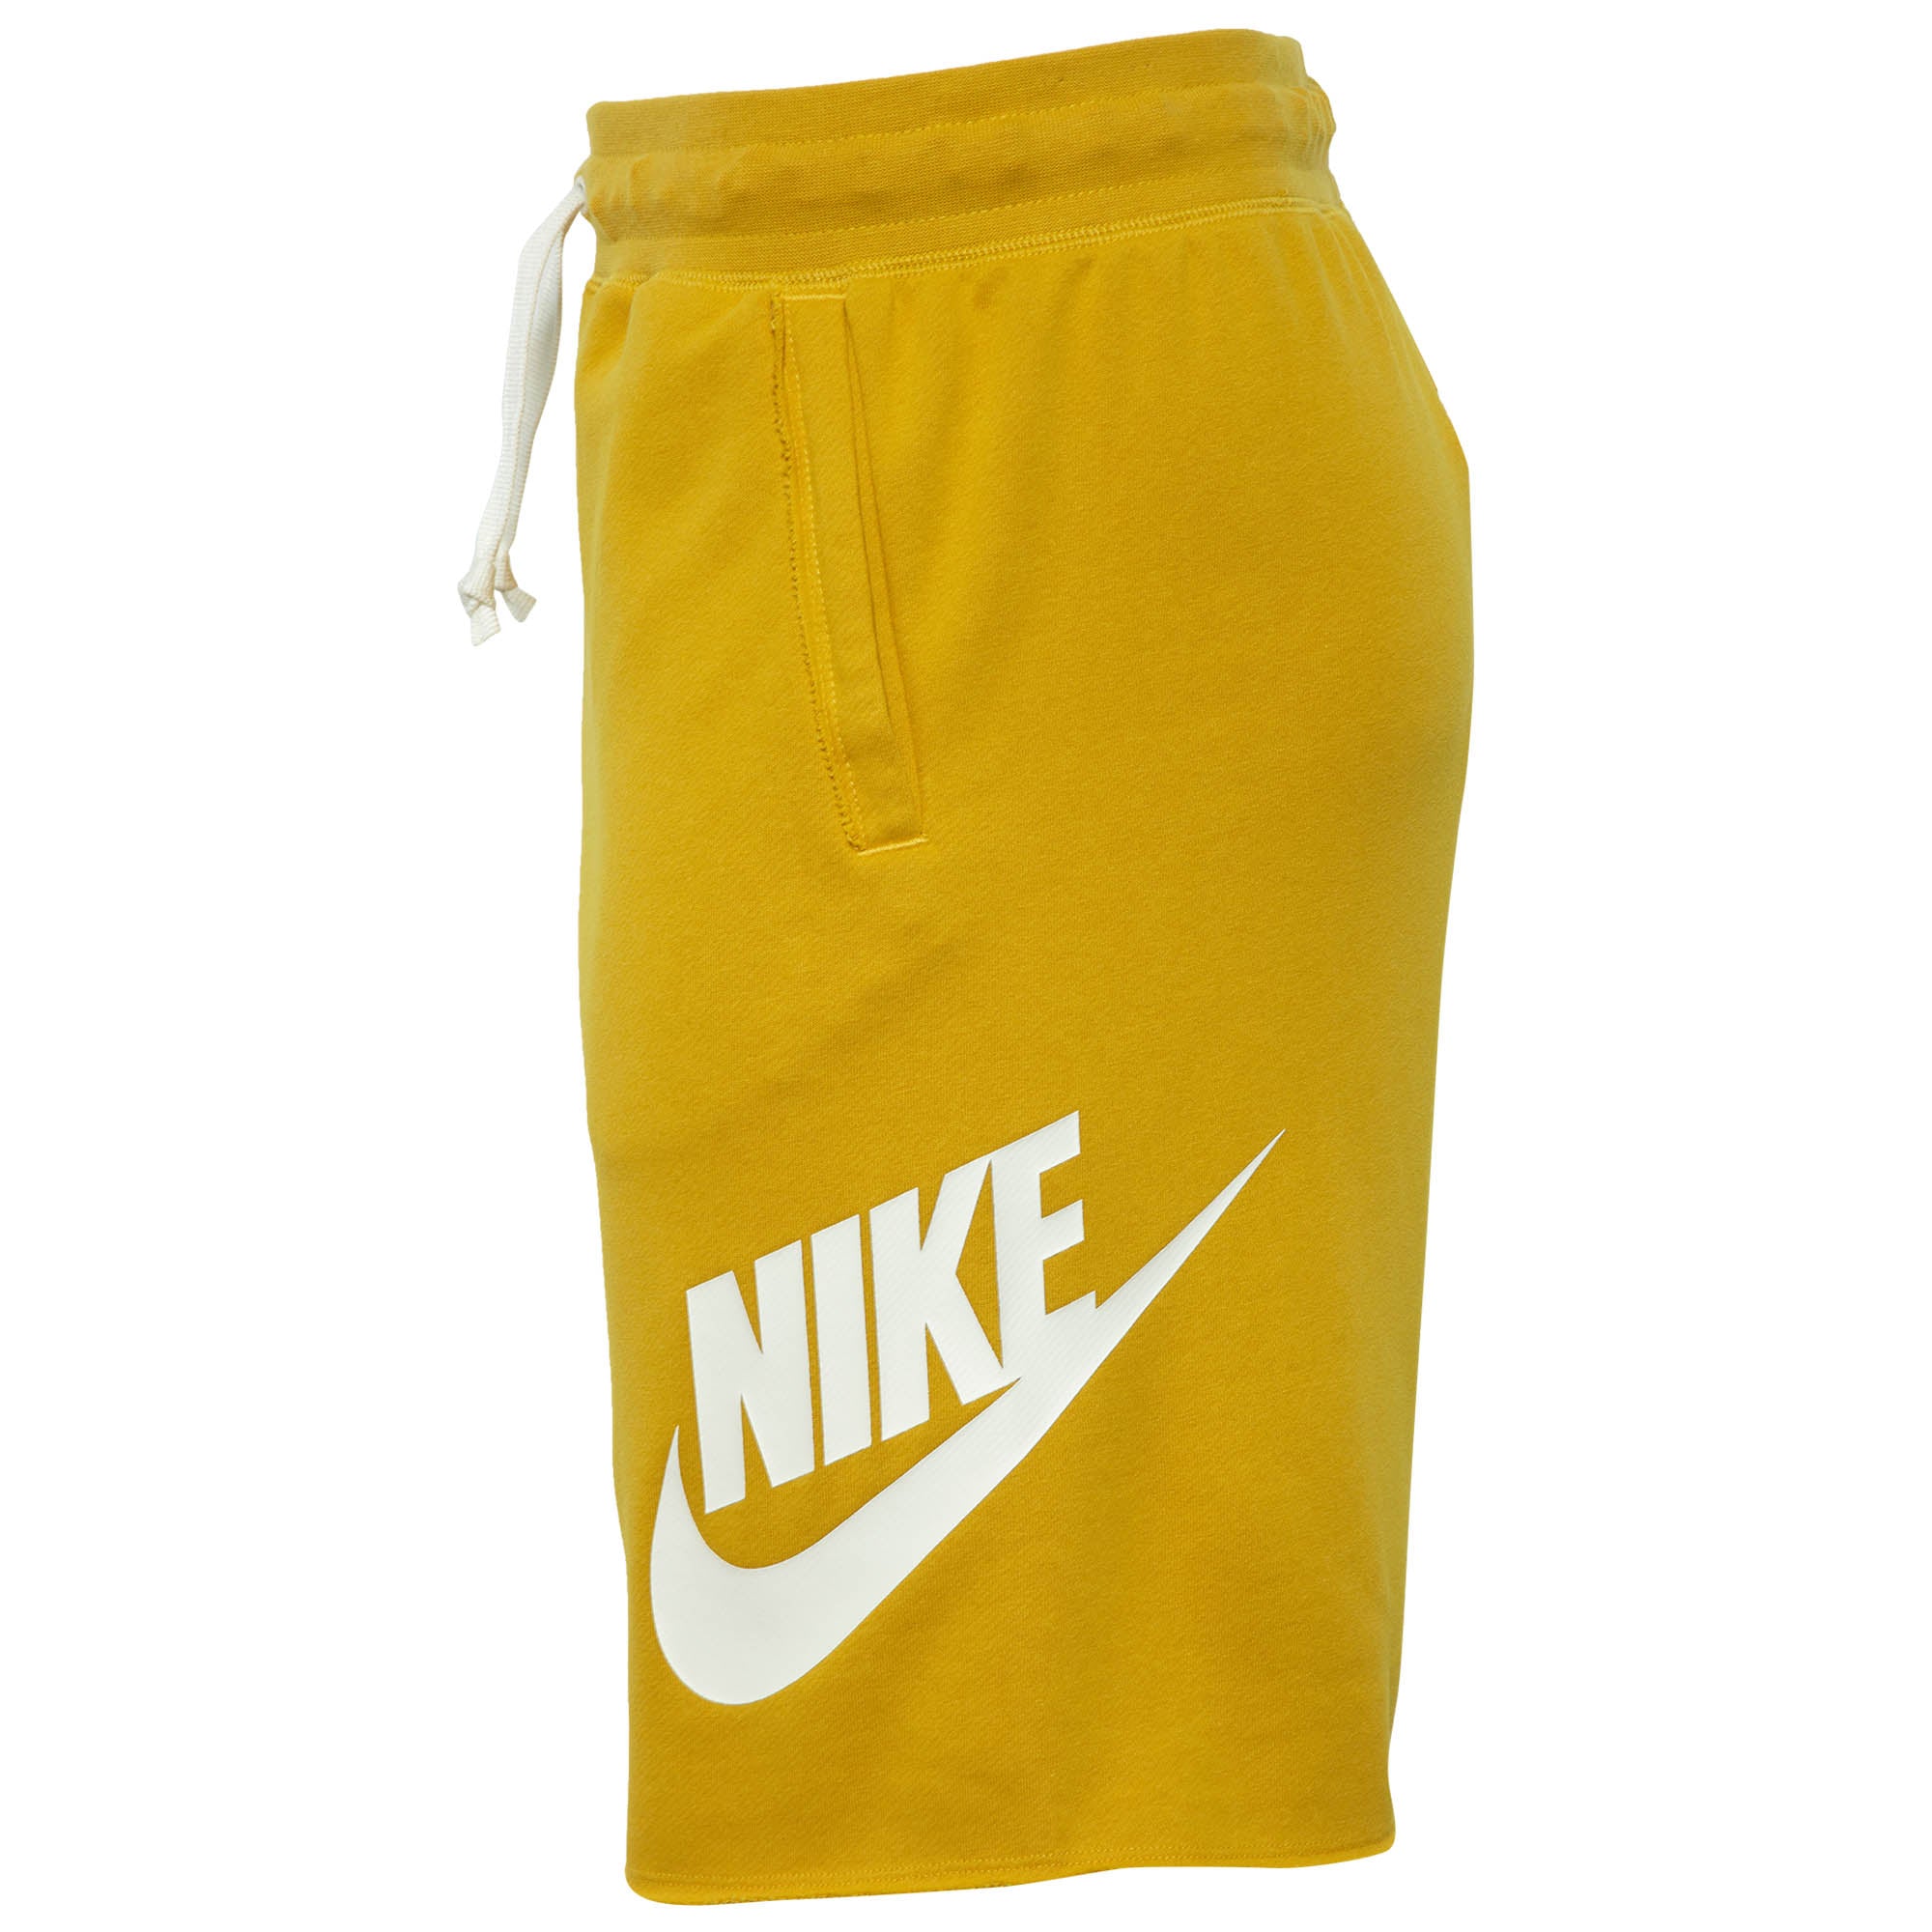 nike yellow shorts mens